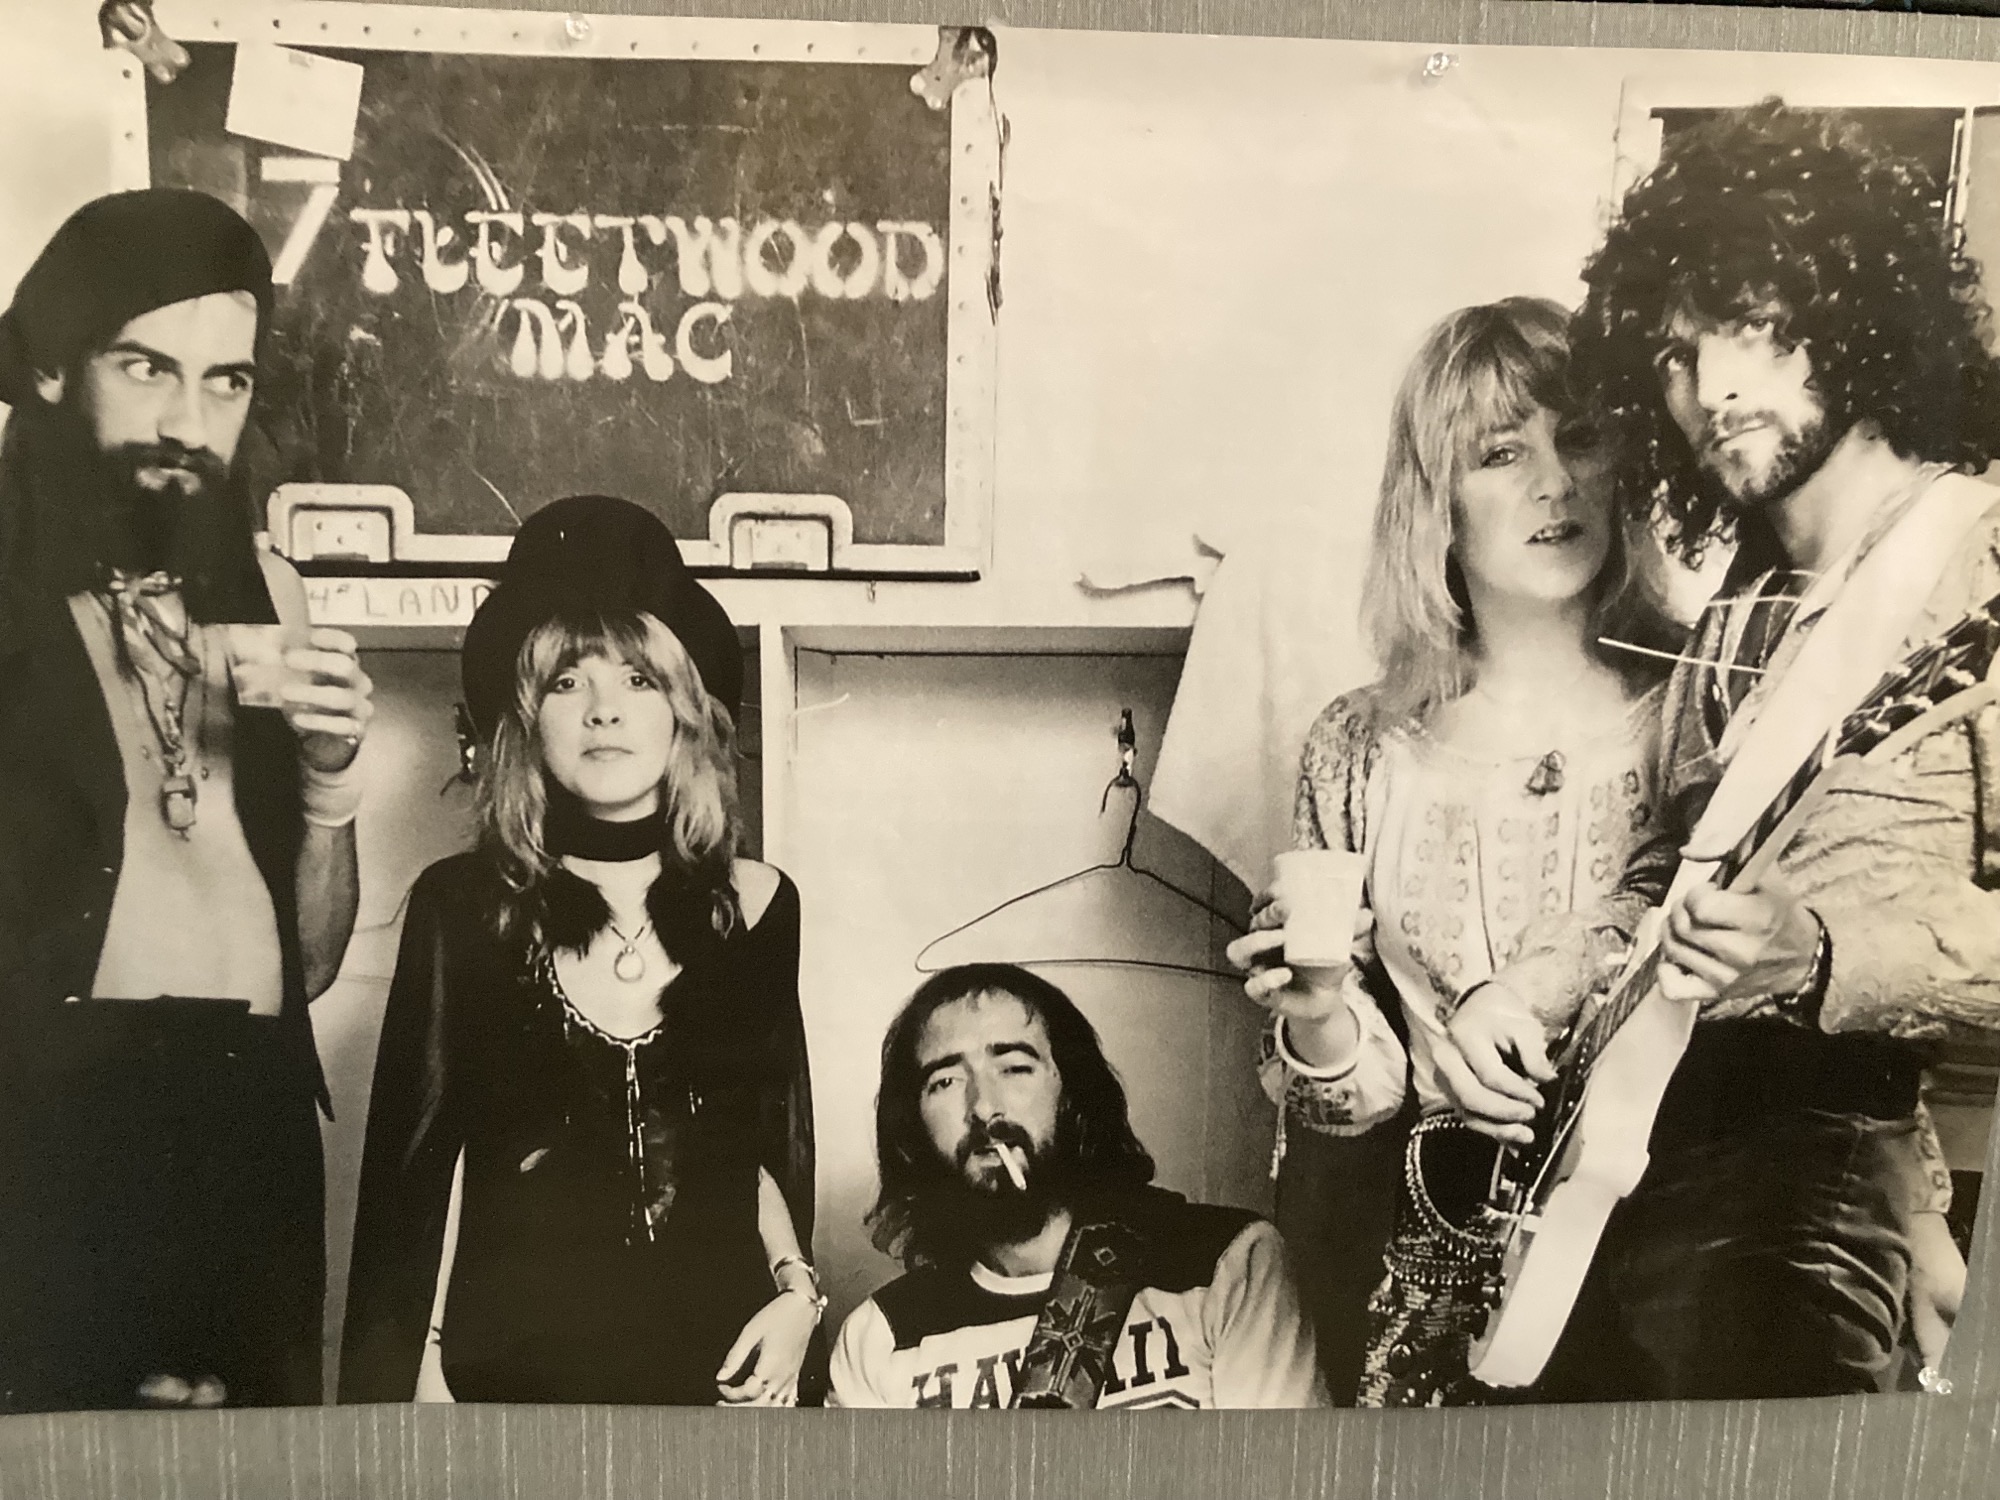 Fleetwood Mac Reunion?  It’s A “No” From Stevie Nicks…